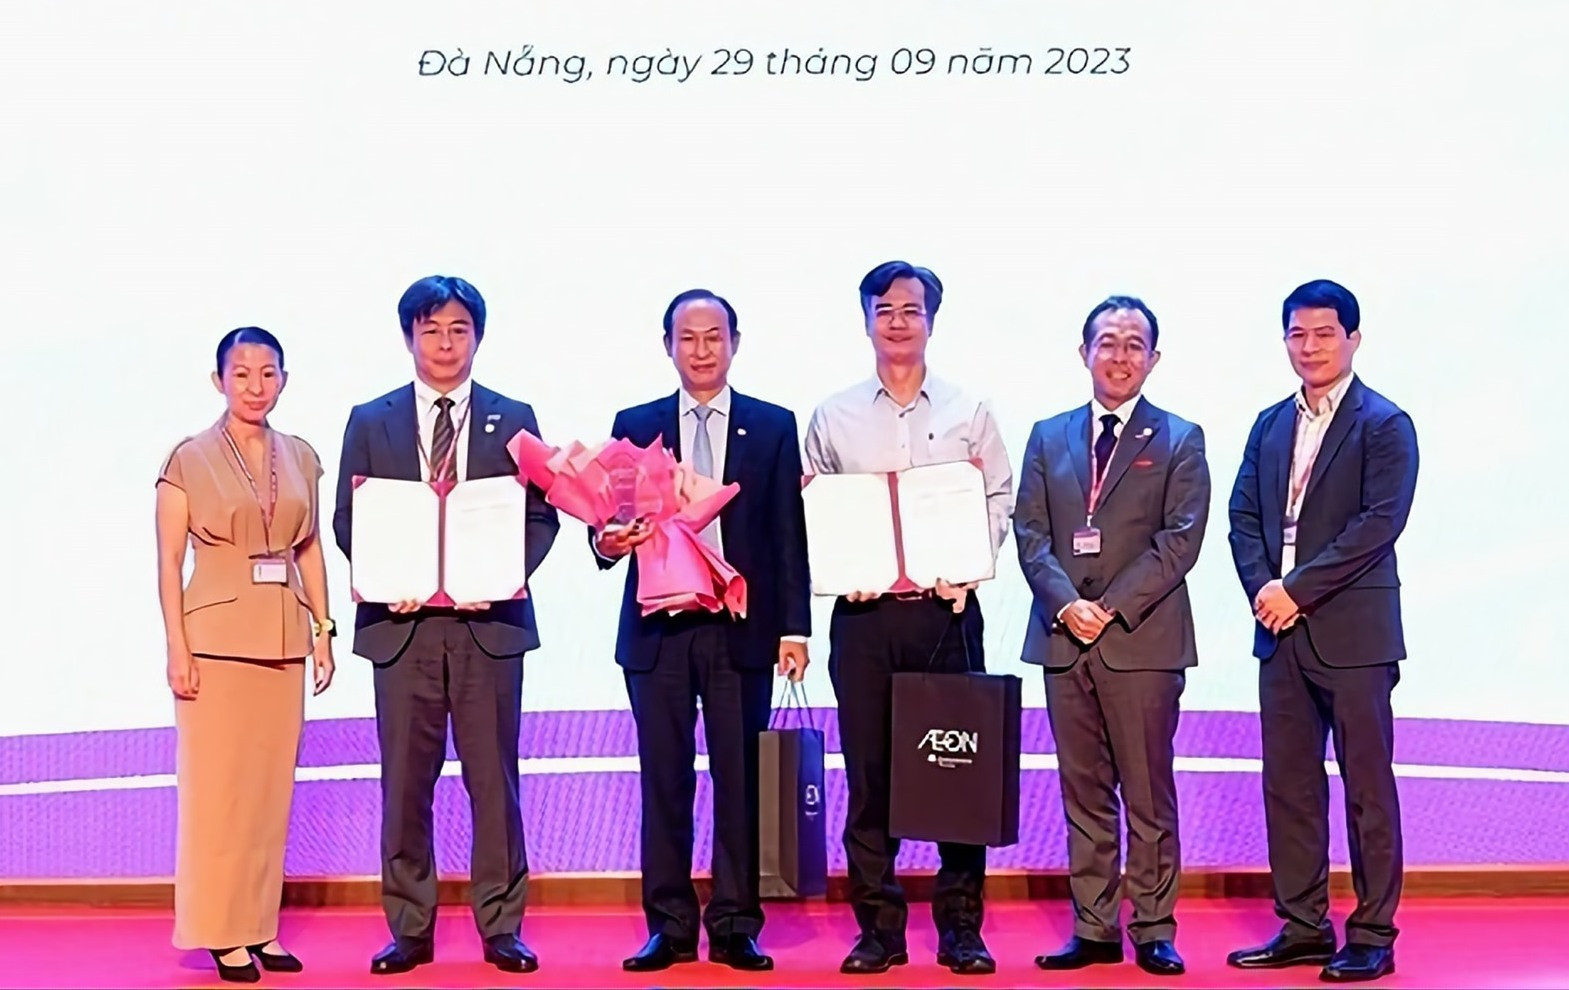 Đại diện Công ty AEON Việt Nam (thứ hai bên trái) và lãnh đạo Trường ĐH Ngoại ngữ -ĐHĐN ký kết hợp tác ngày 29/9/2023. Ảnh QUẾ LÂM